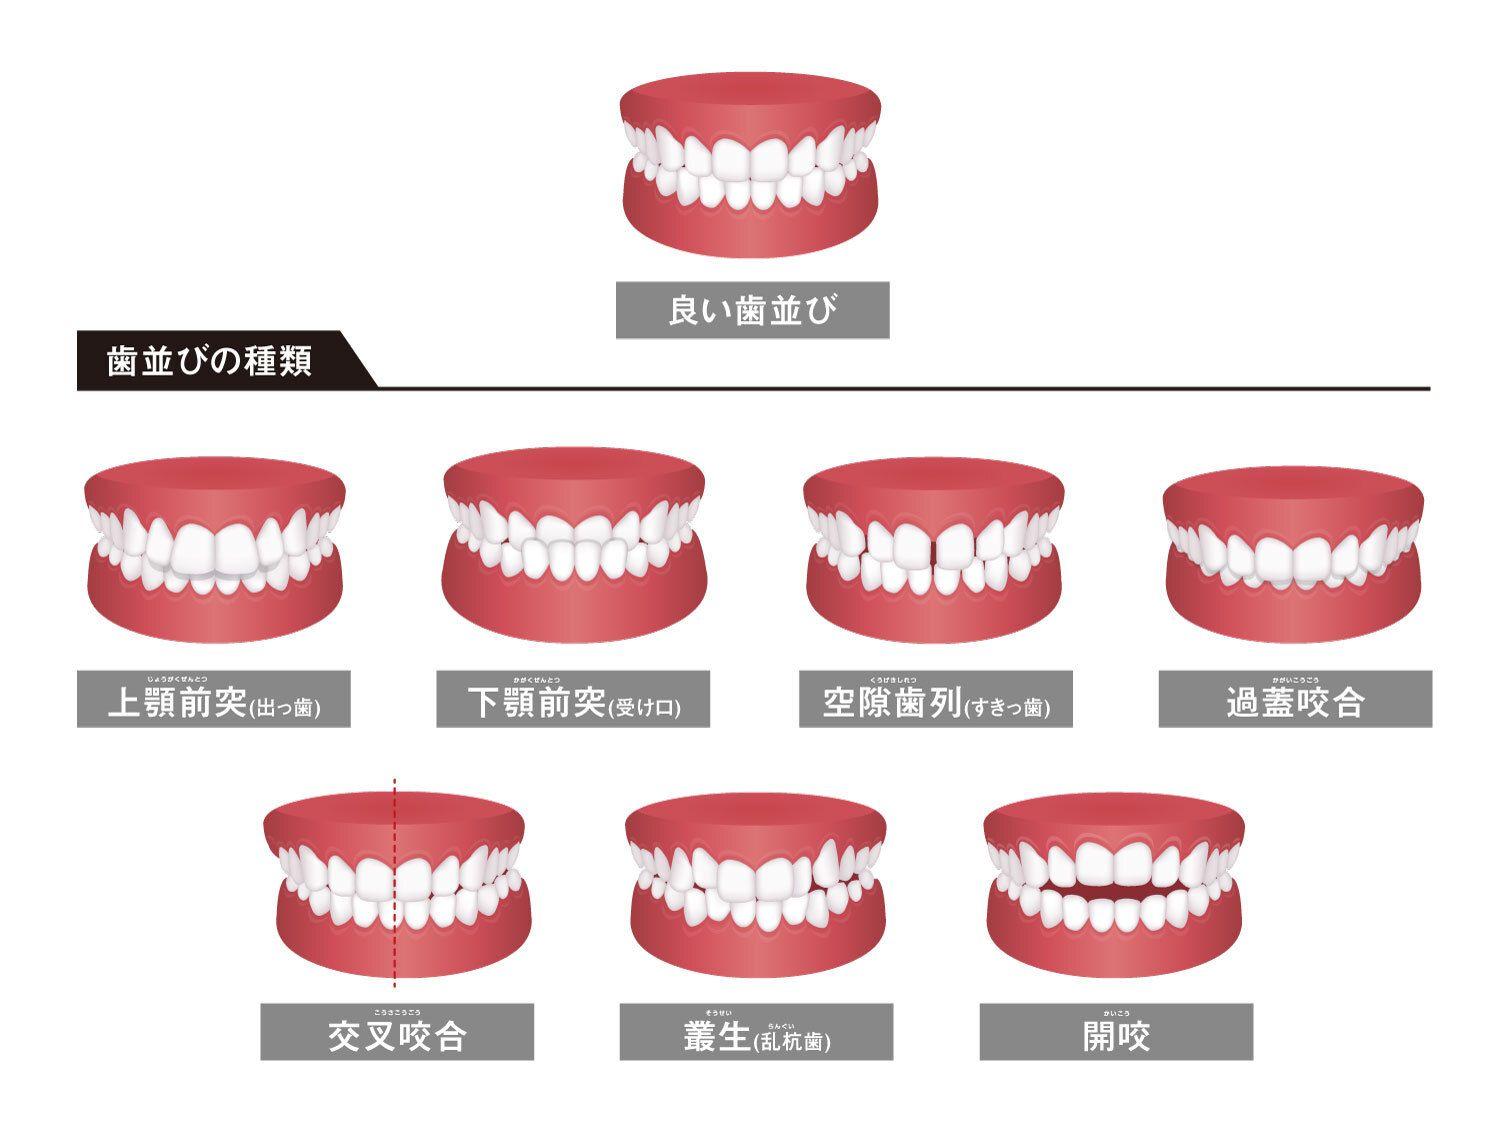 歯並びがガタガタする4つの原因と矯正方法